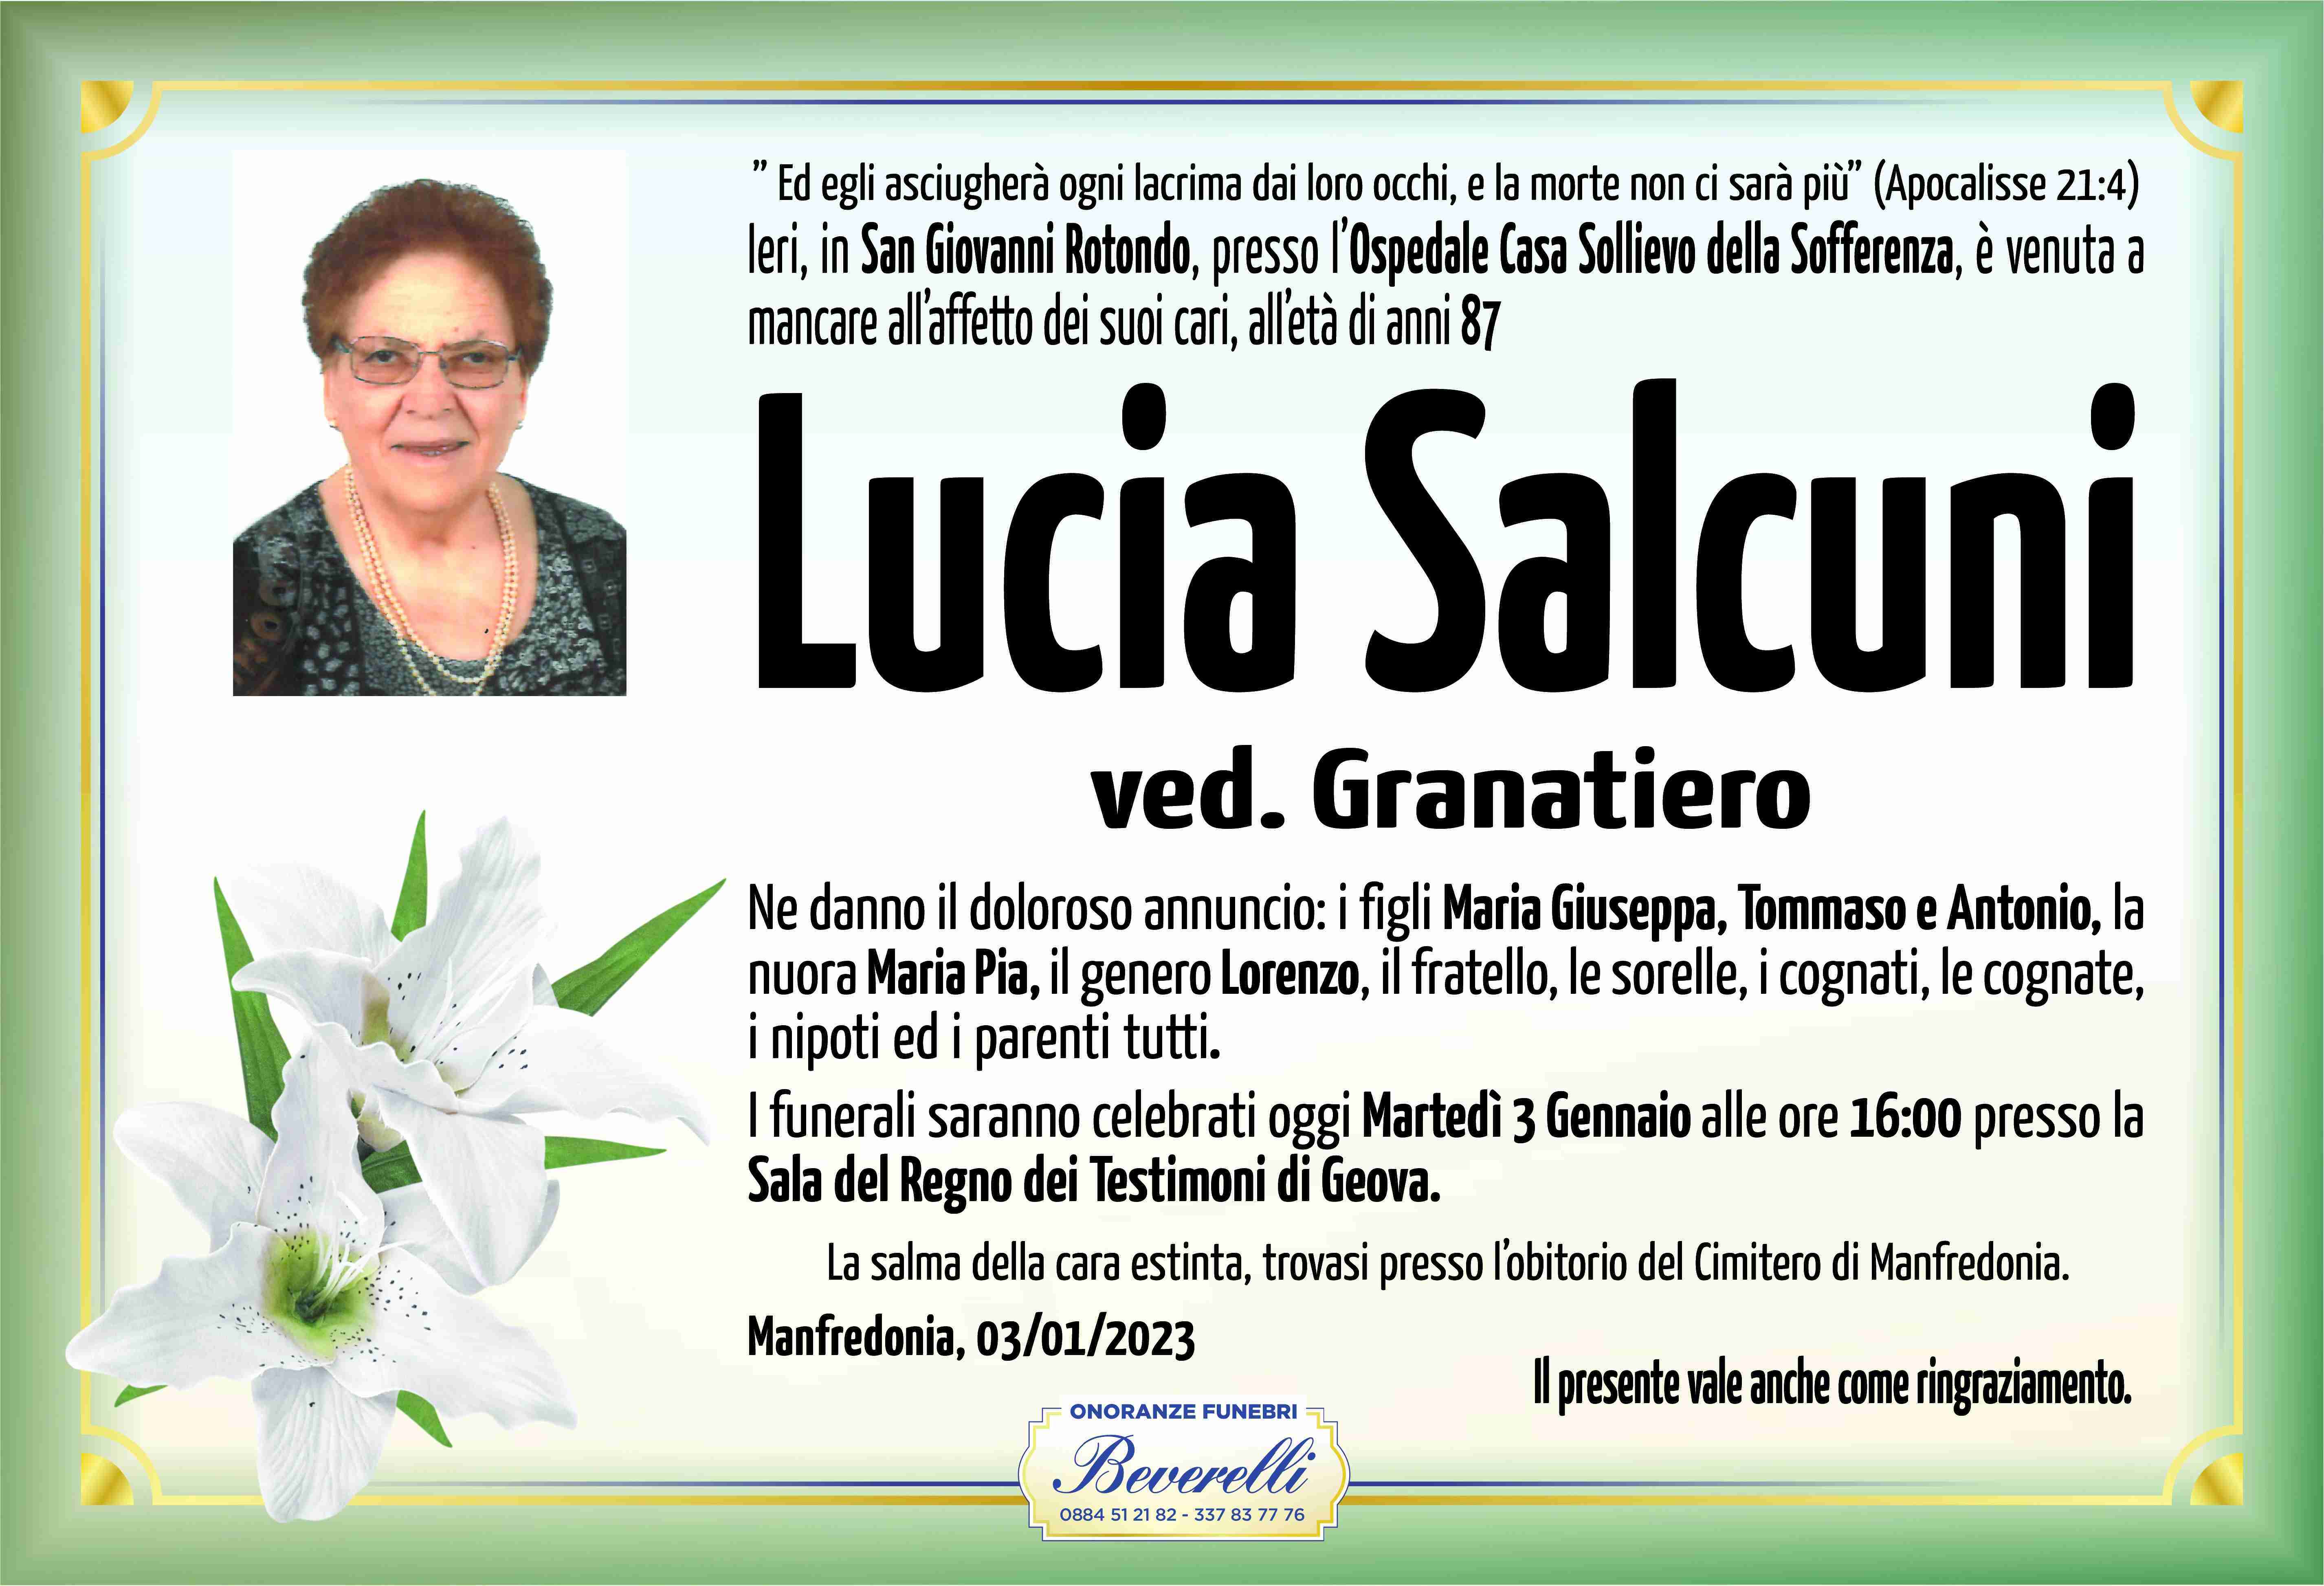 Lucia Salcuni